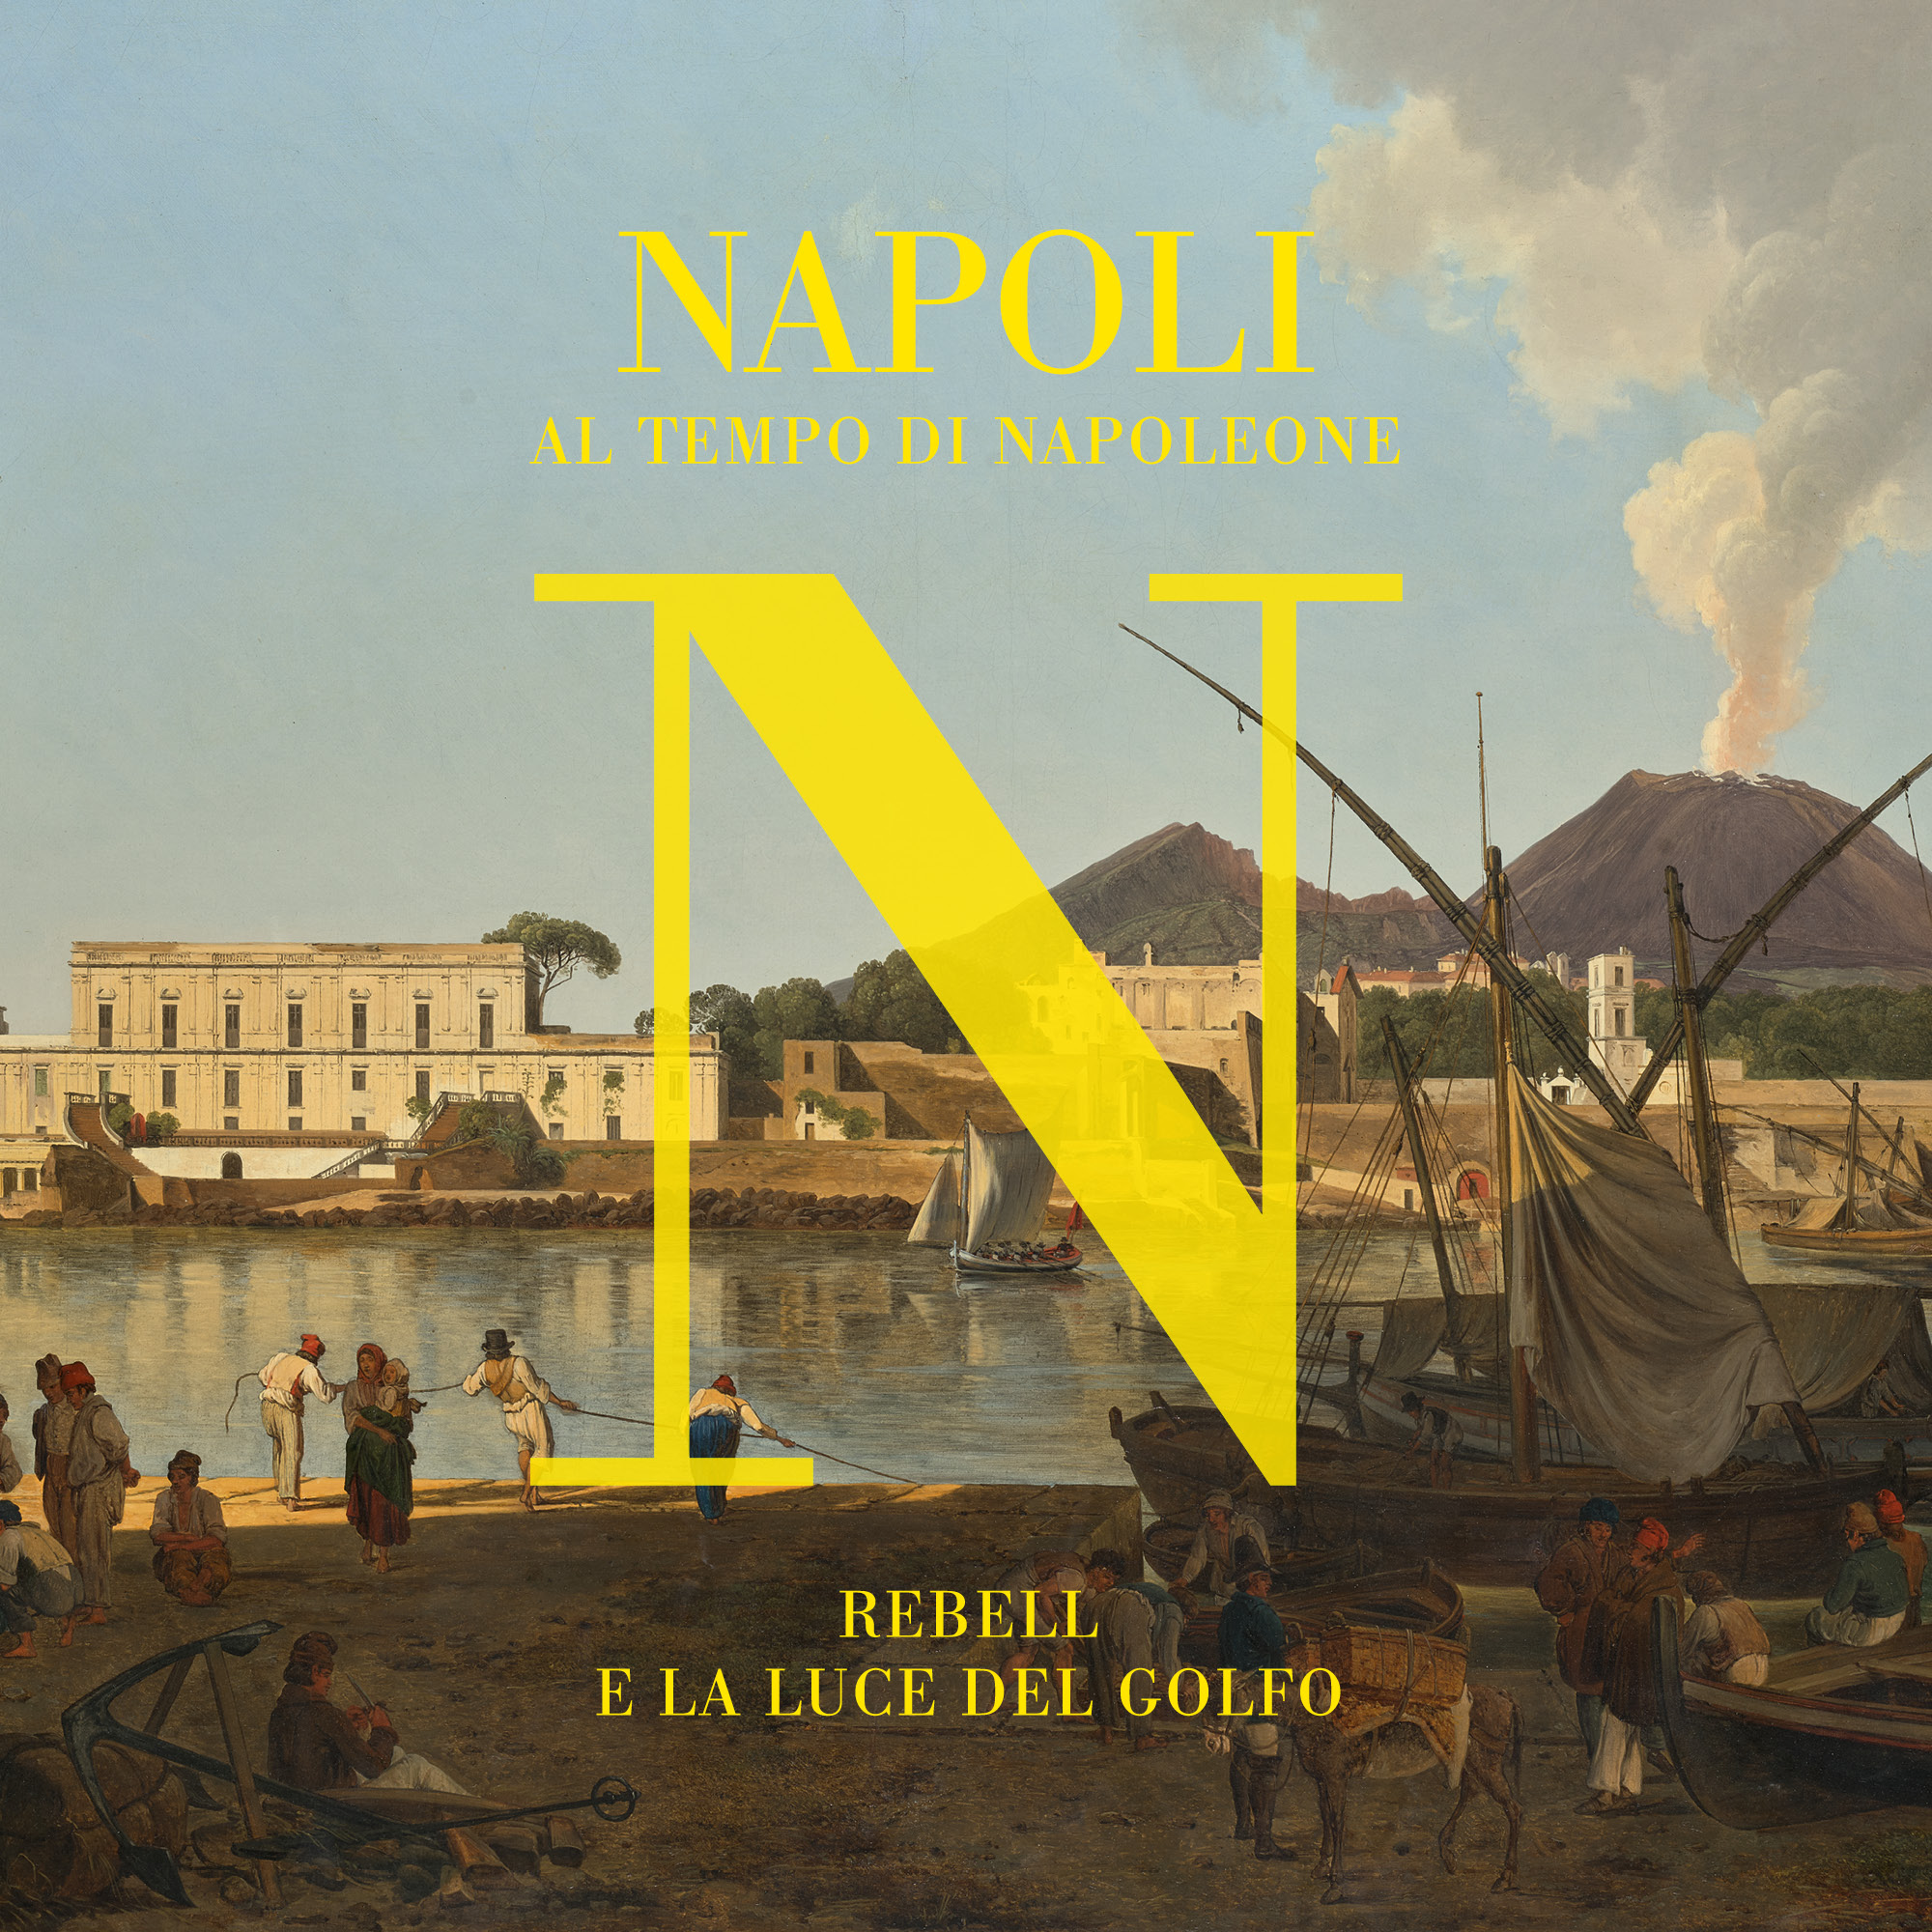 Napoli-al-tempo-di-NapoleoneRebell-e-la-luce-del-golfo-001 